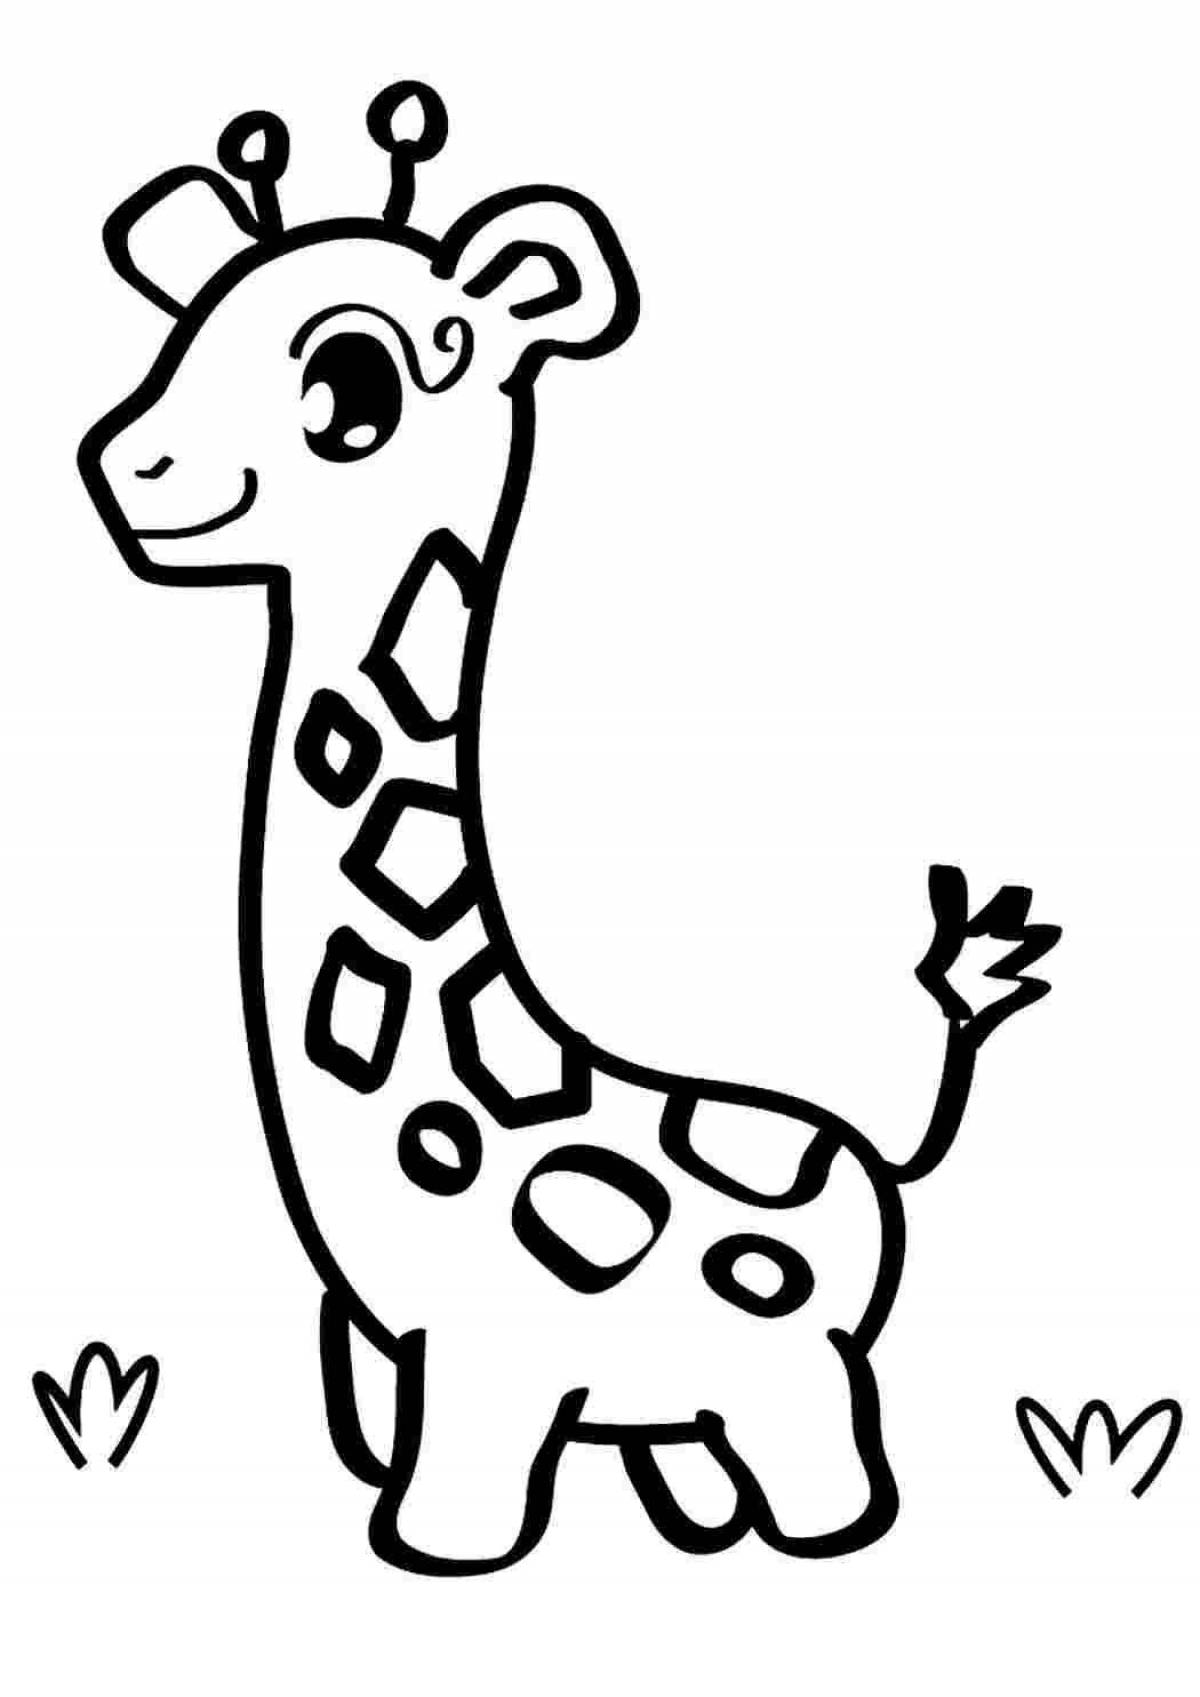 Adorable giraffe coloring book